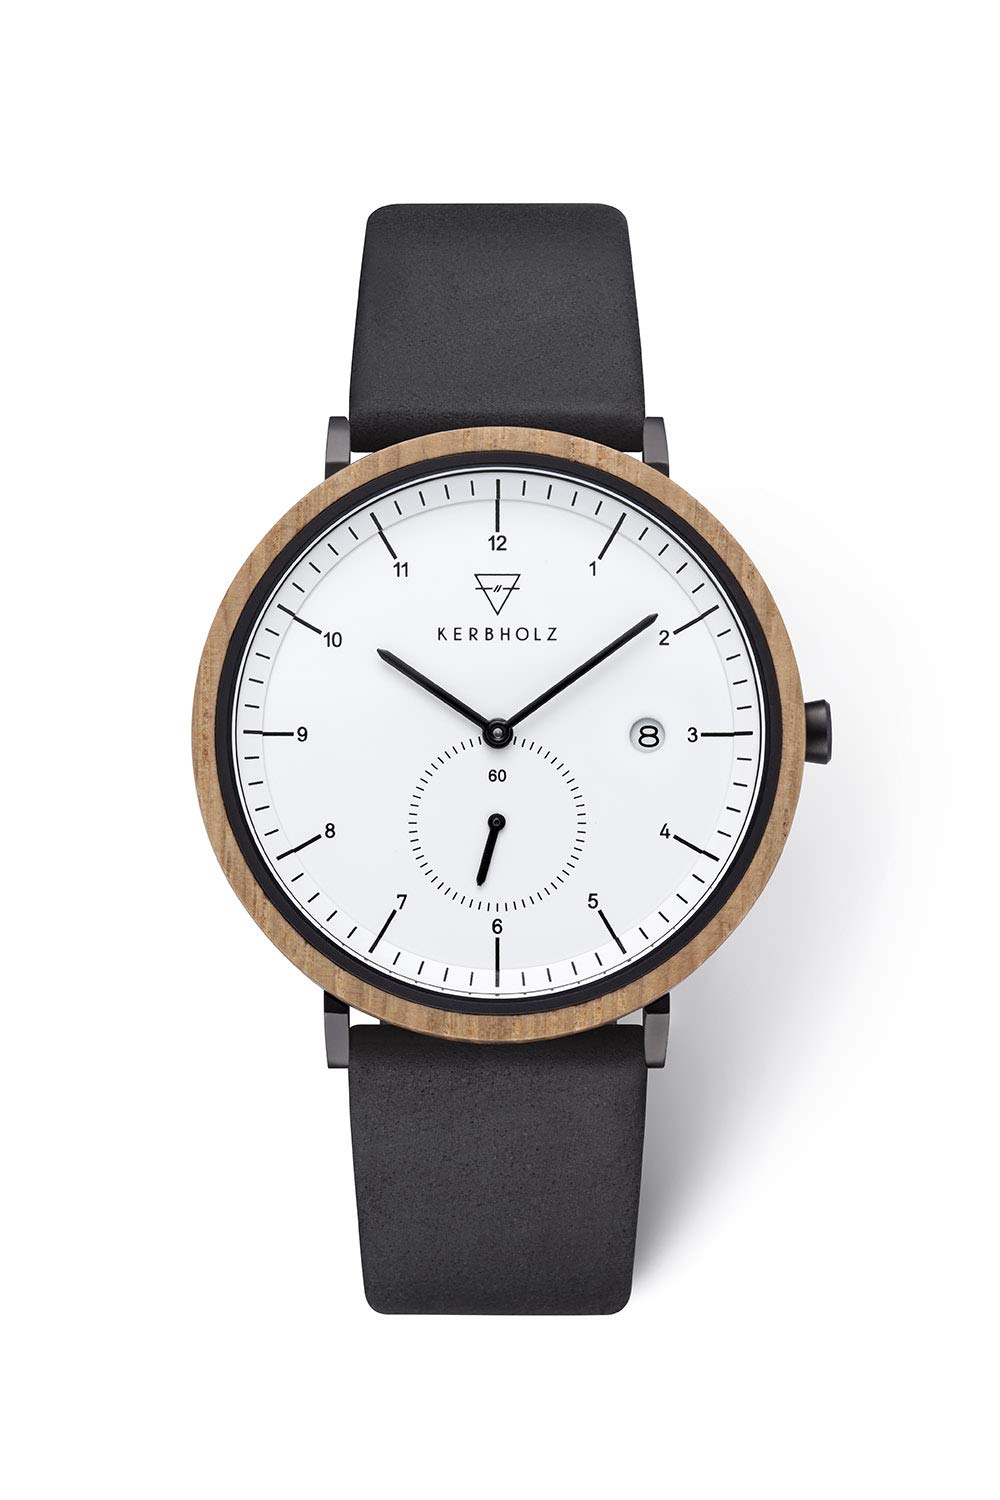 Kerbholz - Holzuhr für Herren - Anton - analoge Quarz Armbanduhr mit Datumsanzeige - Herrenuhr mit echtem Lederarmband - Schlichte Uhr für Männer mit Korpus aus echtem Holz (Oak Midnight Black)